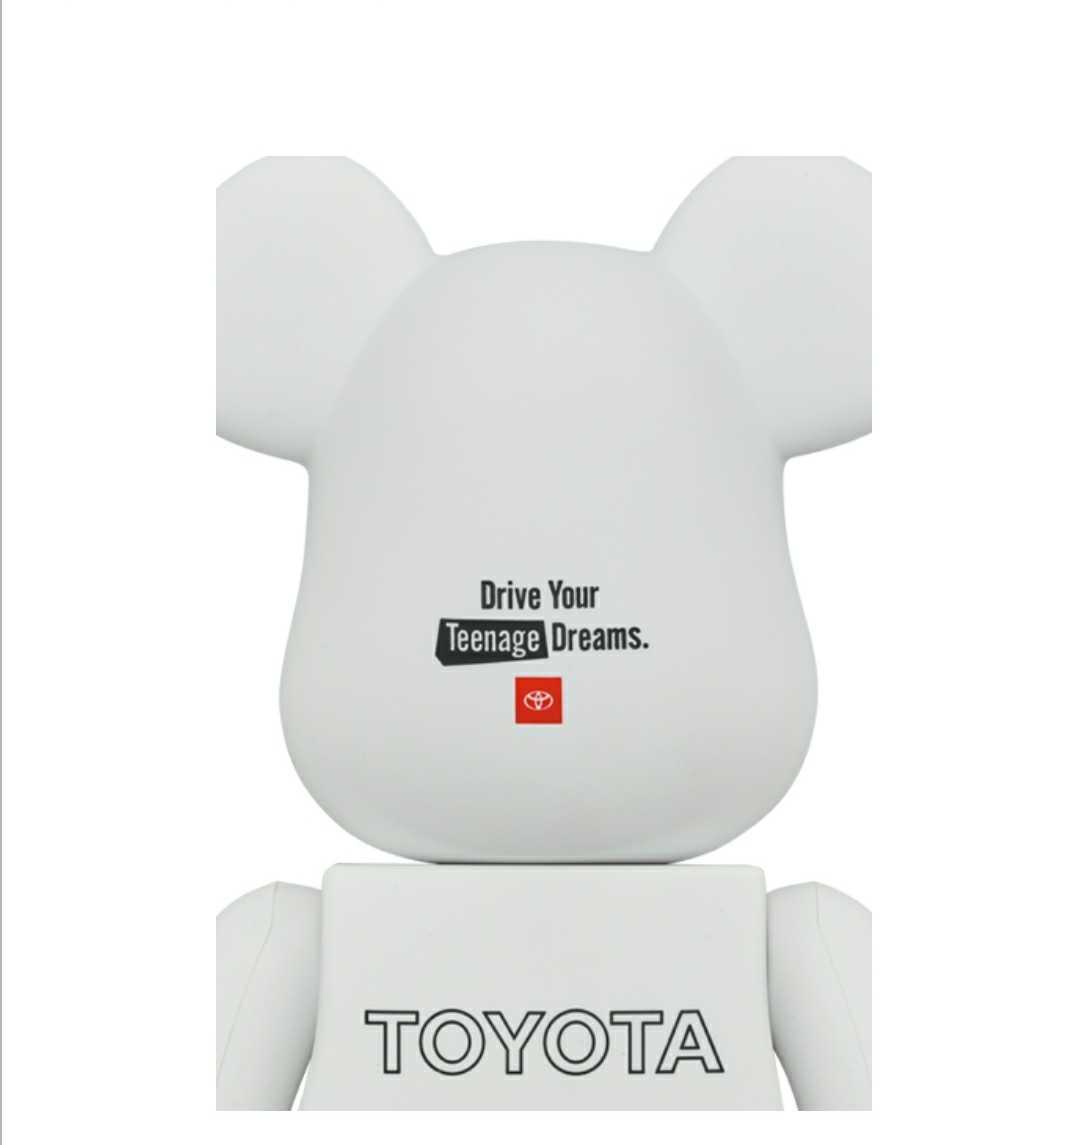 お買い得モデル ベアブリック トヨタ 1000% BE@RBRICK TOYOTA abamedyc.com